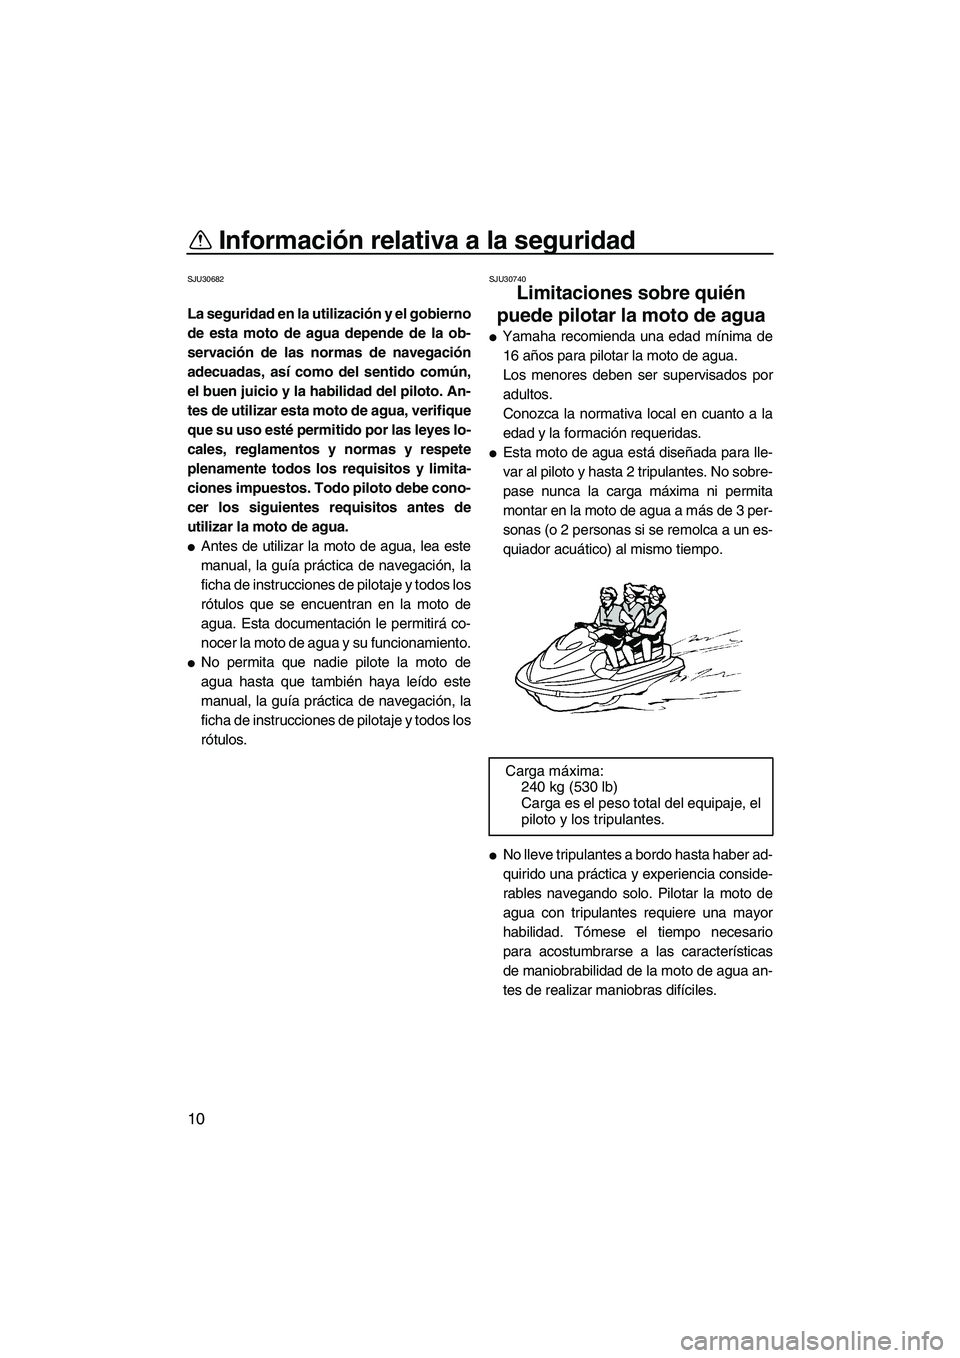 YAMAHA VX DELUXE 2010  Manuale de Empleo (in Spanish) Información relativa a la seguridad
10
SJU30682
La seguridad en la utilización y el gobierno
de esta moto de agua depende de la ob-
servación de las normas de navegación
adecuadas, así como del s